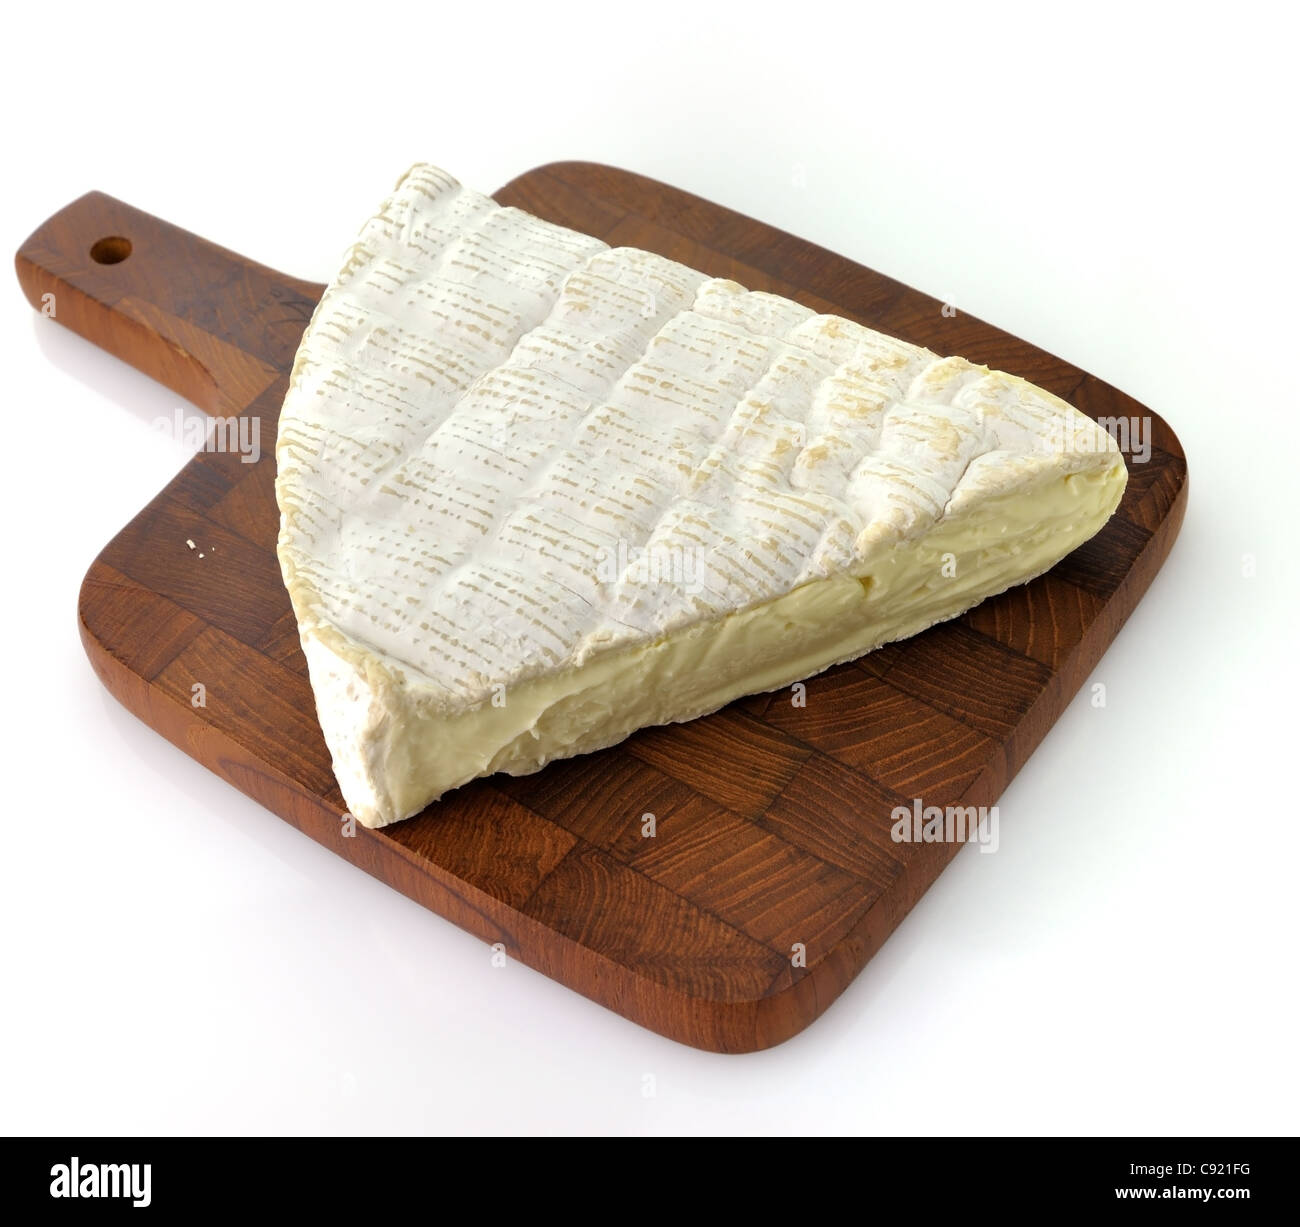 Tranche de fromage Brie française sur fond blanc Banque D'Images